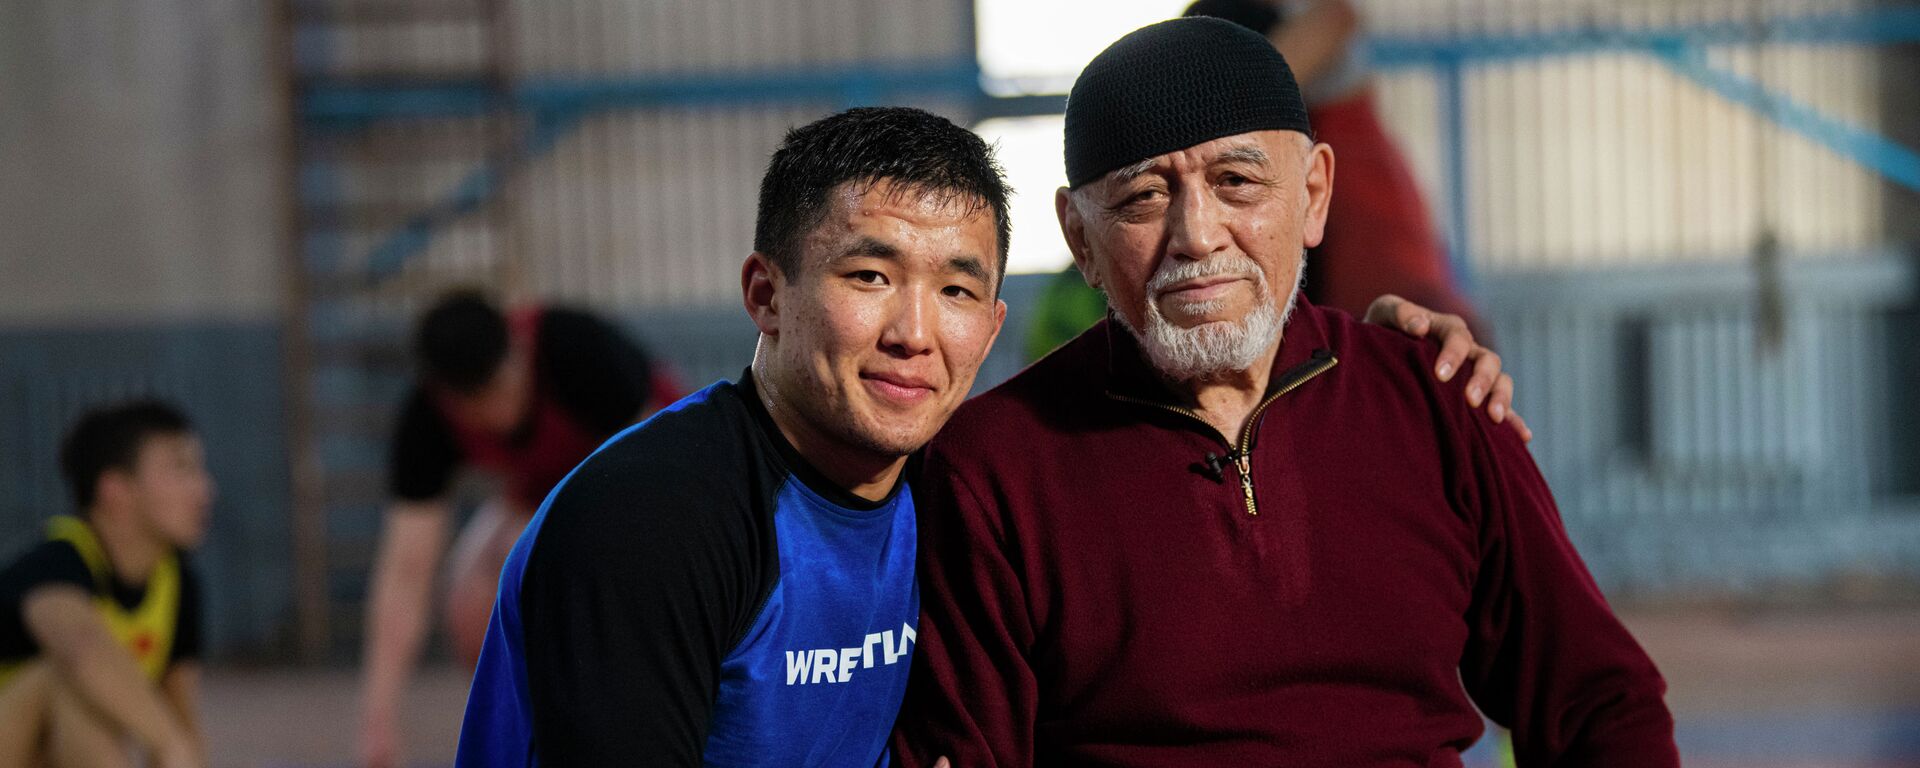 Тренирует чемпионов в 84 года — видео про легенду кыргызского спорта - Sputnik Кыргызстан, 1920, 03.12.2021